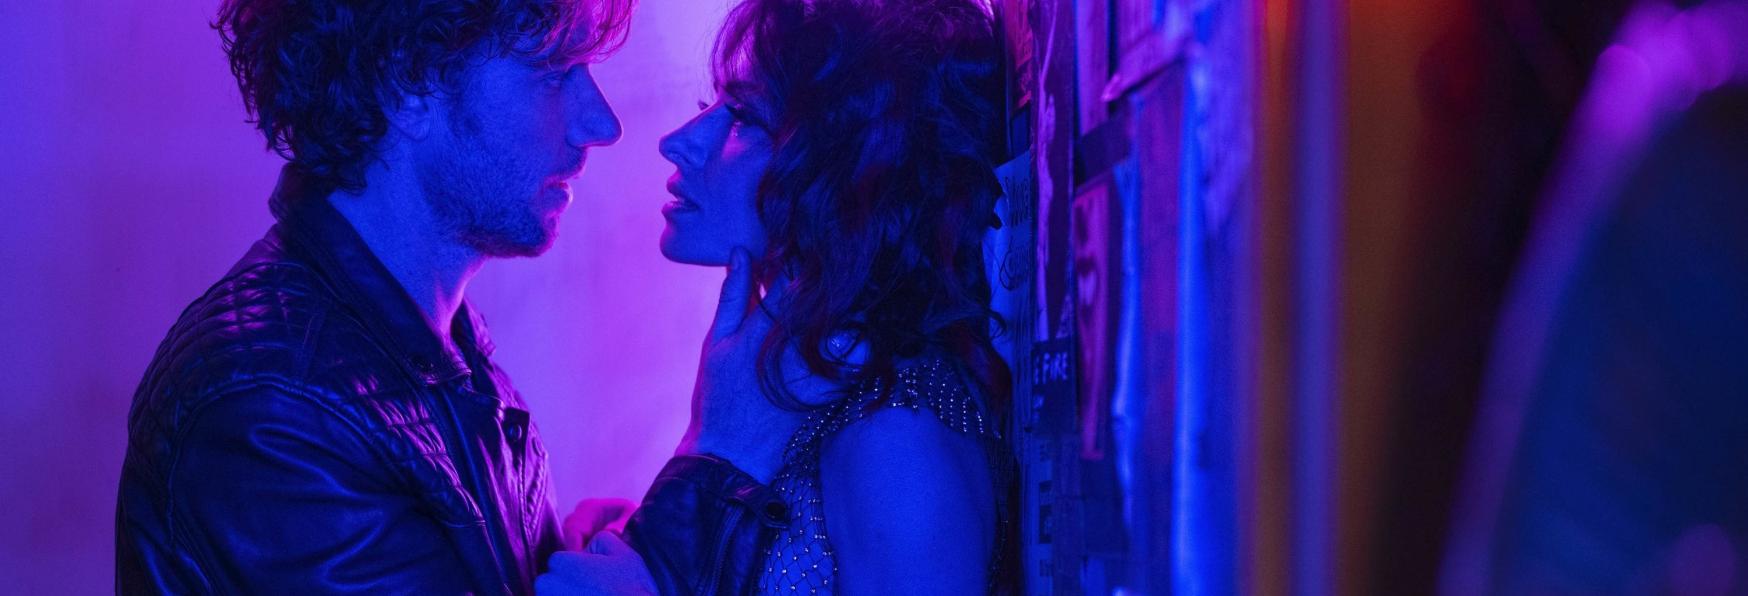 Sex/Life: Trama, Cast, Trailer, Data e Anticipazioni sulla Serie TV in uscita su Netflix